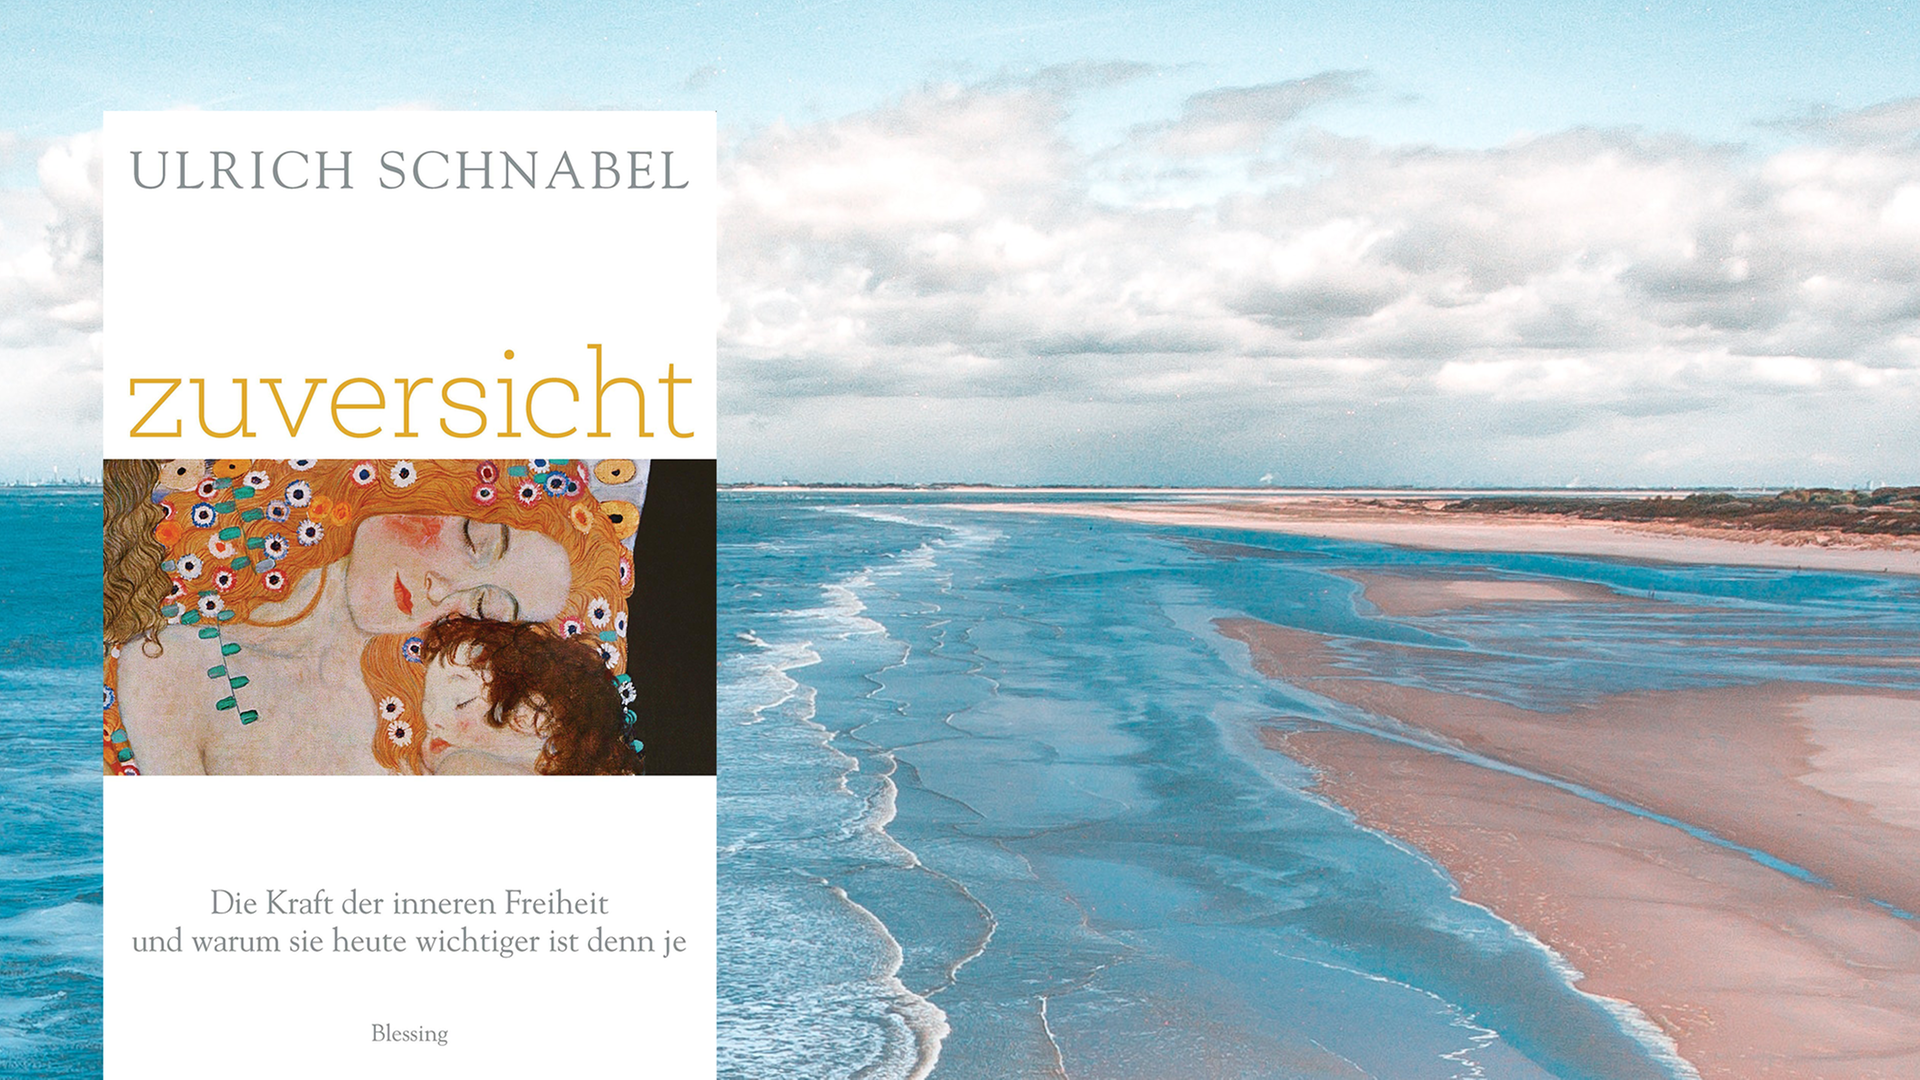 Das Cover des Buches "Zuversicht" von Ulrich Schnabel